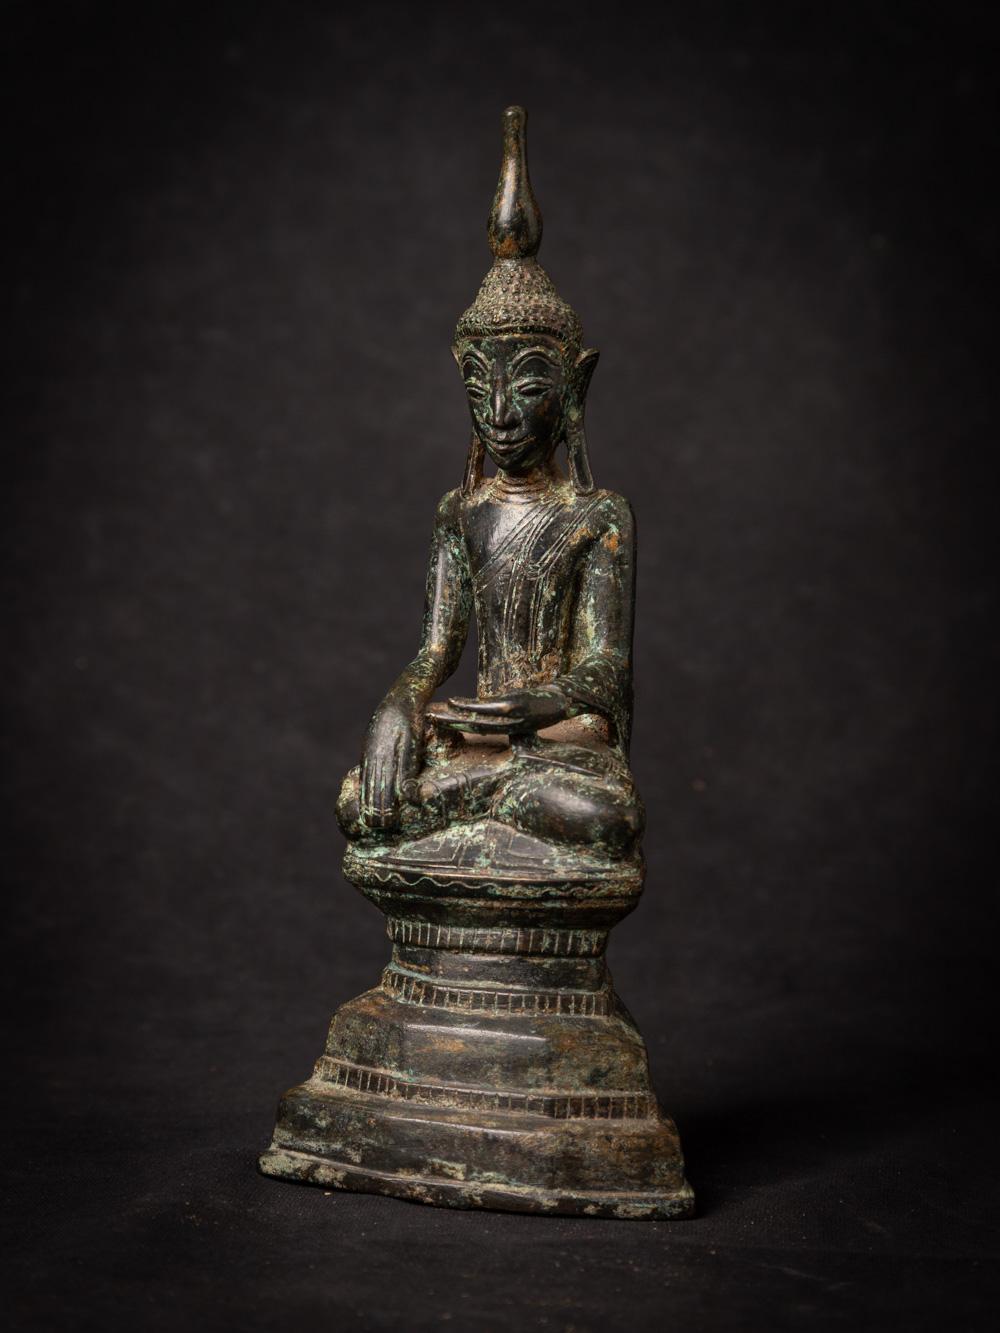 Diese antike burmesische Buddha-Statue aus Bronze ist ein bemerkenswertes Stück Kunstfertigkeit und Spiritualität. Sie ist aus Bronze im Shan-Stil (Tai Yai) gefertigt und hat eine Höhe von 22,8 cm, eine Breite von 9,6 cm und eine Tiefe von 7 cm. Die